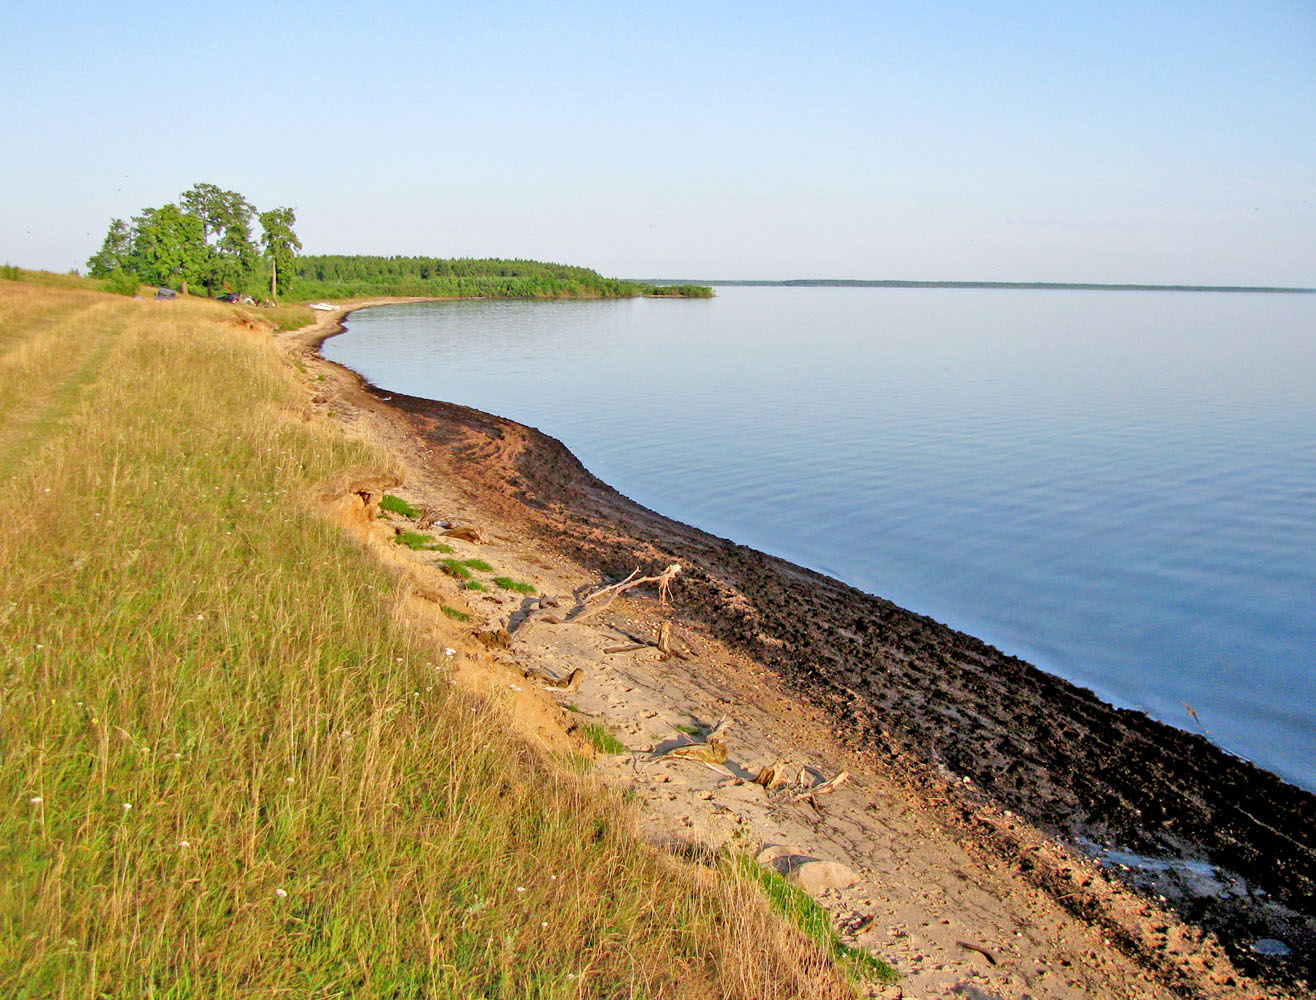 Рыбинское водохранилище, image of landscape/habitat.